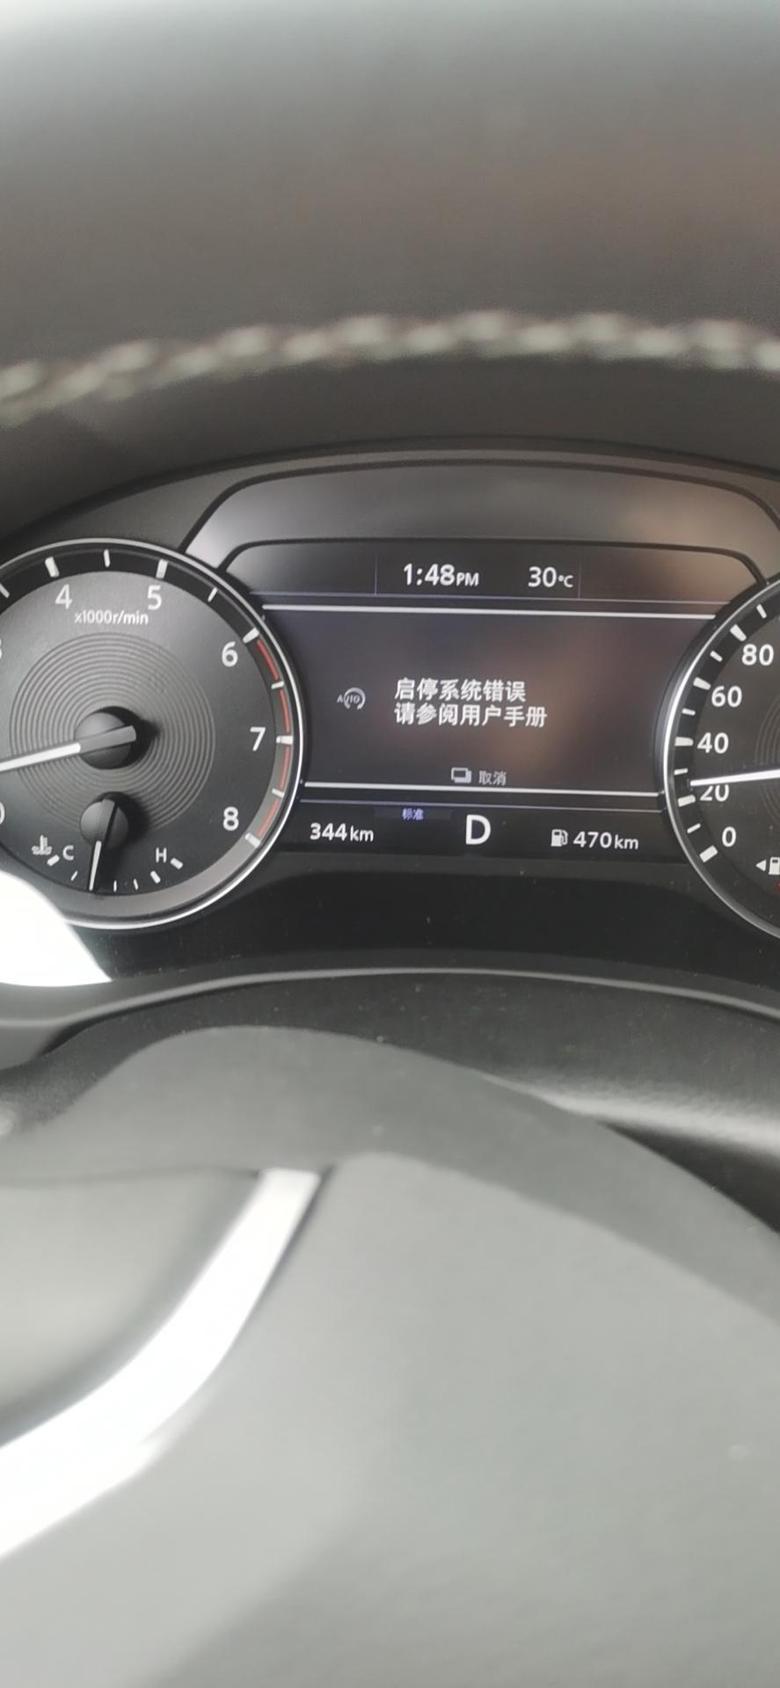 英菲尼迪qx50新车提车半个月，启停系统故障，电脑检测说油压问题。目前还没找到具体原因，问一下大家有类似情况么？什么原因呢？